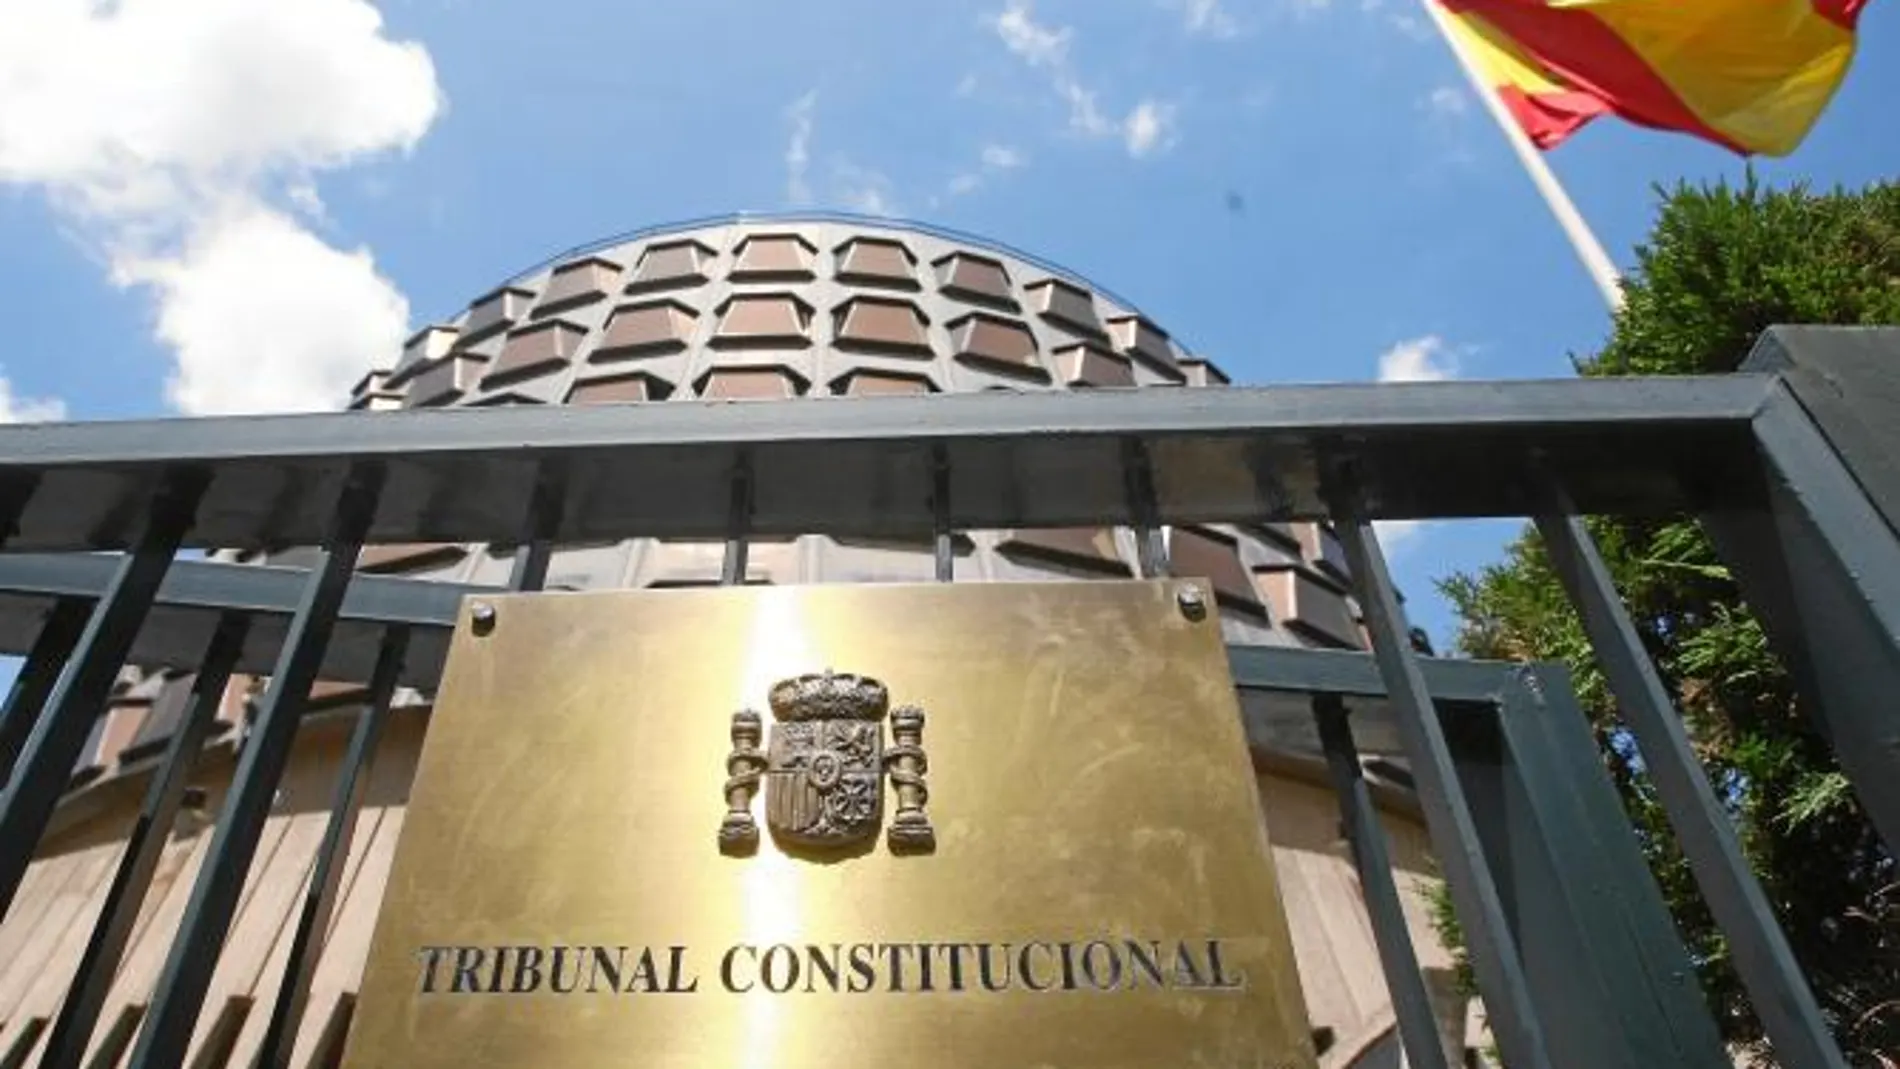 Ocho años después del recurso presentado por el Parlamento de Cataluña, el Tribunal Constitucional ha dejado clara su postura